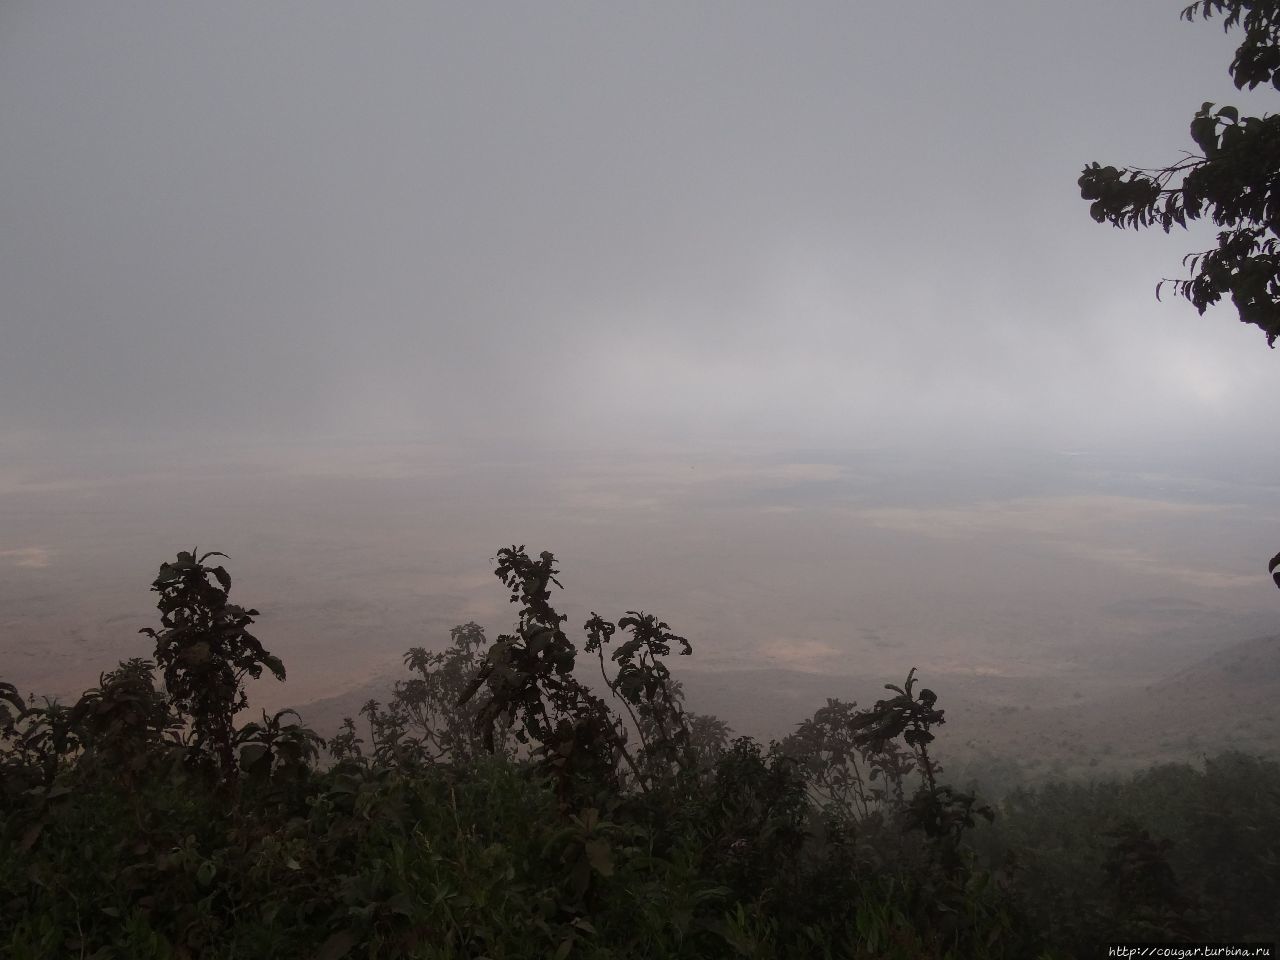 Кратер образовался 2.5 миллиона лет назад. Нгоронгоро (заповедник в кратере вулкана), Танзания